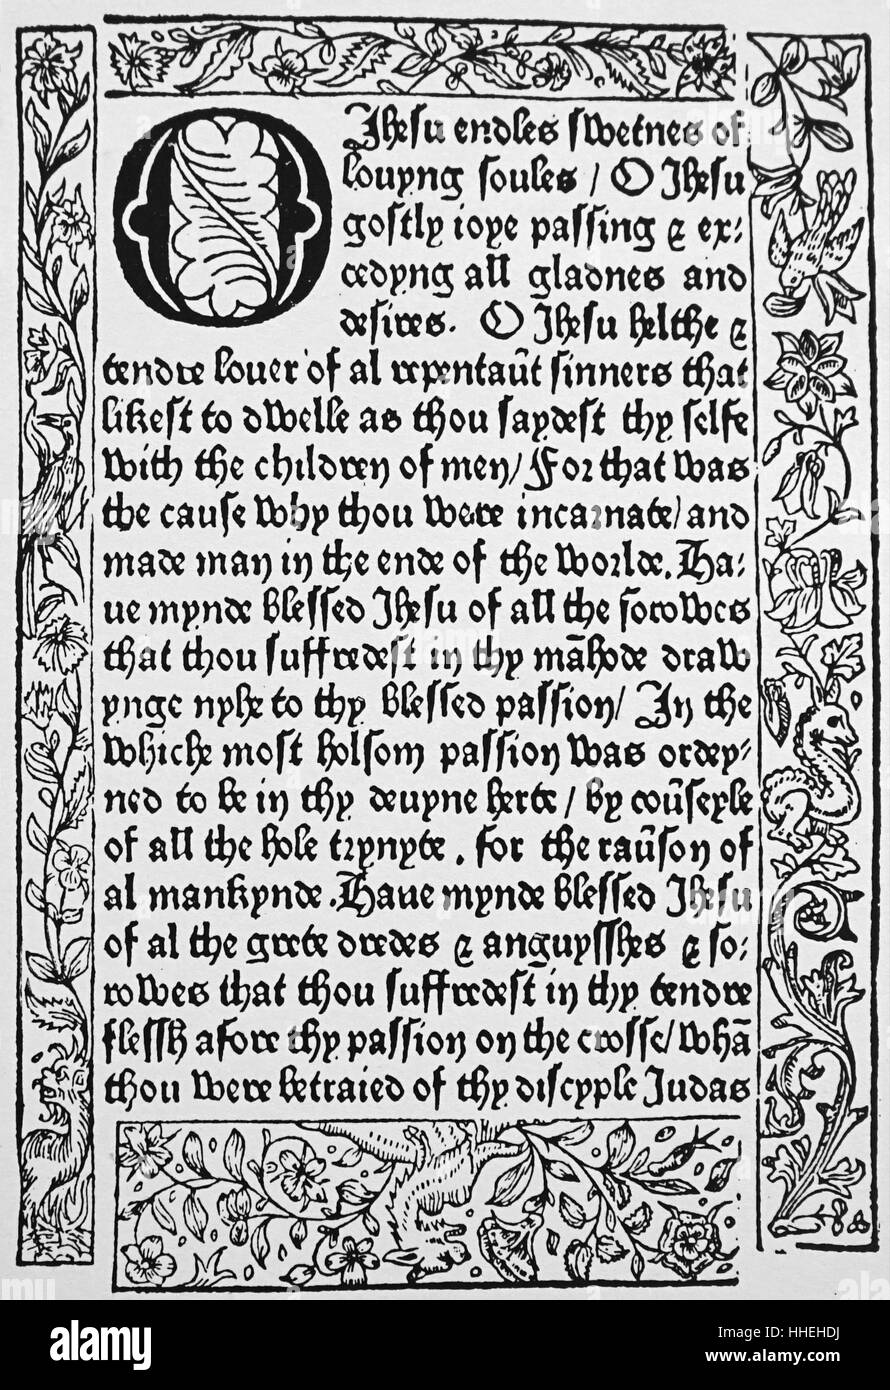 Seite von 'XV O'es' n Englisch Kaufmann William Caxton (1422-1491), Diplomat, Schriftsteller und Drucker. Vom 15. Jahrhundert Stockfoto